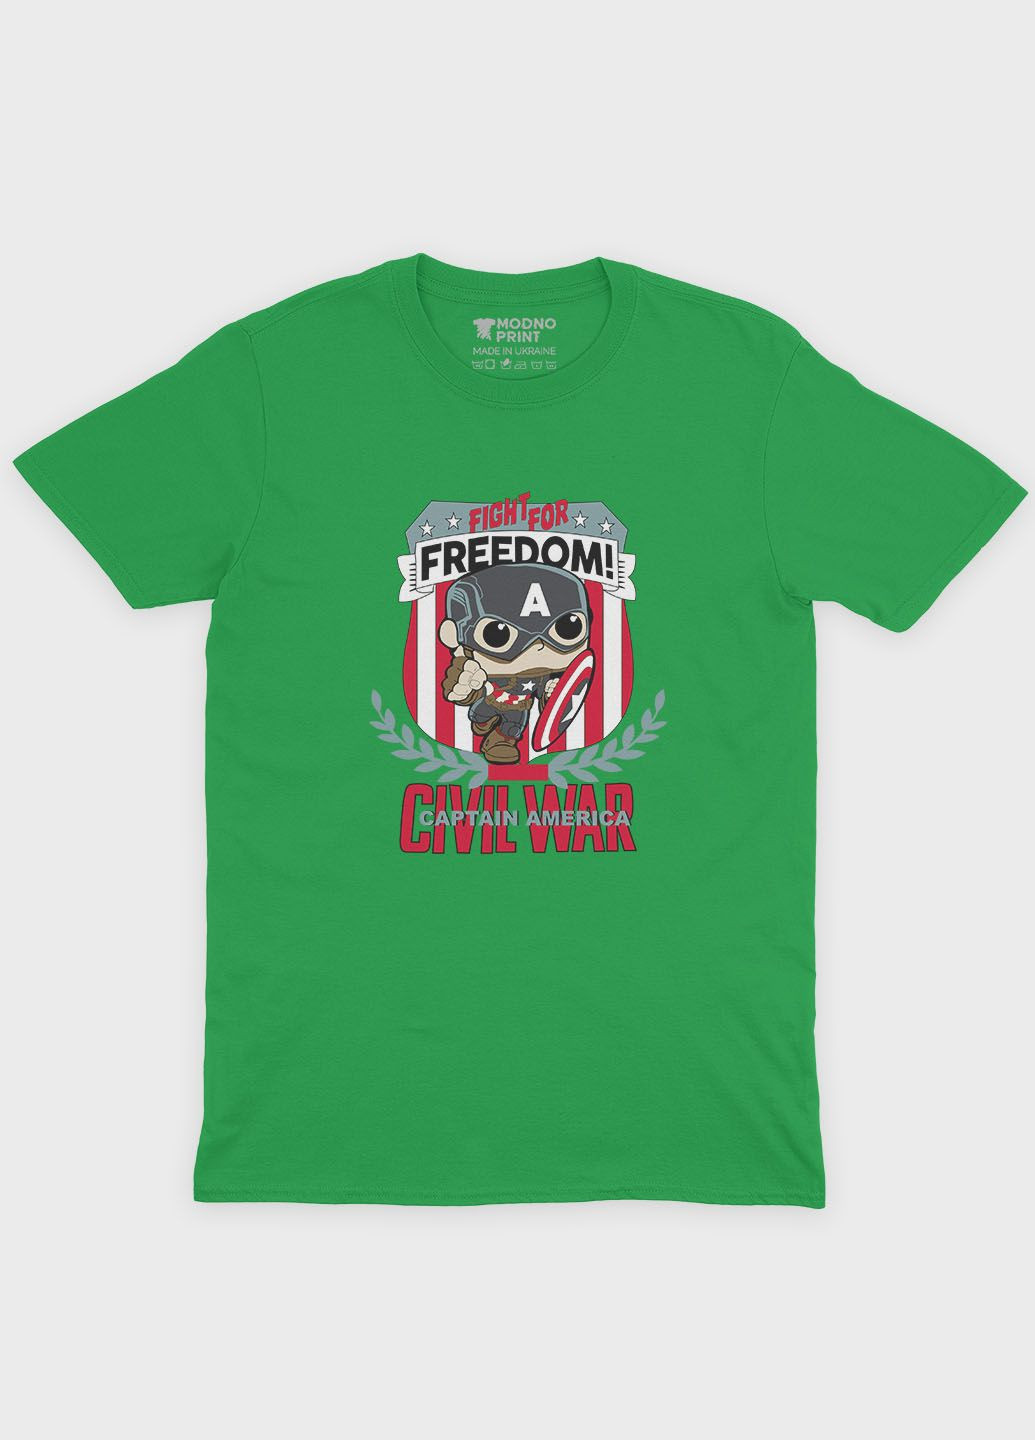 Зеленая демисезонная футболка для девочки с принтом супергероя - капитан америка (ts001-1-keg-006-022-005-g) Modno